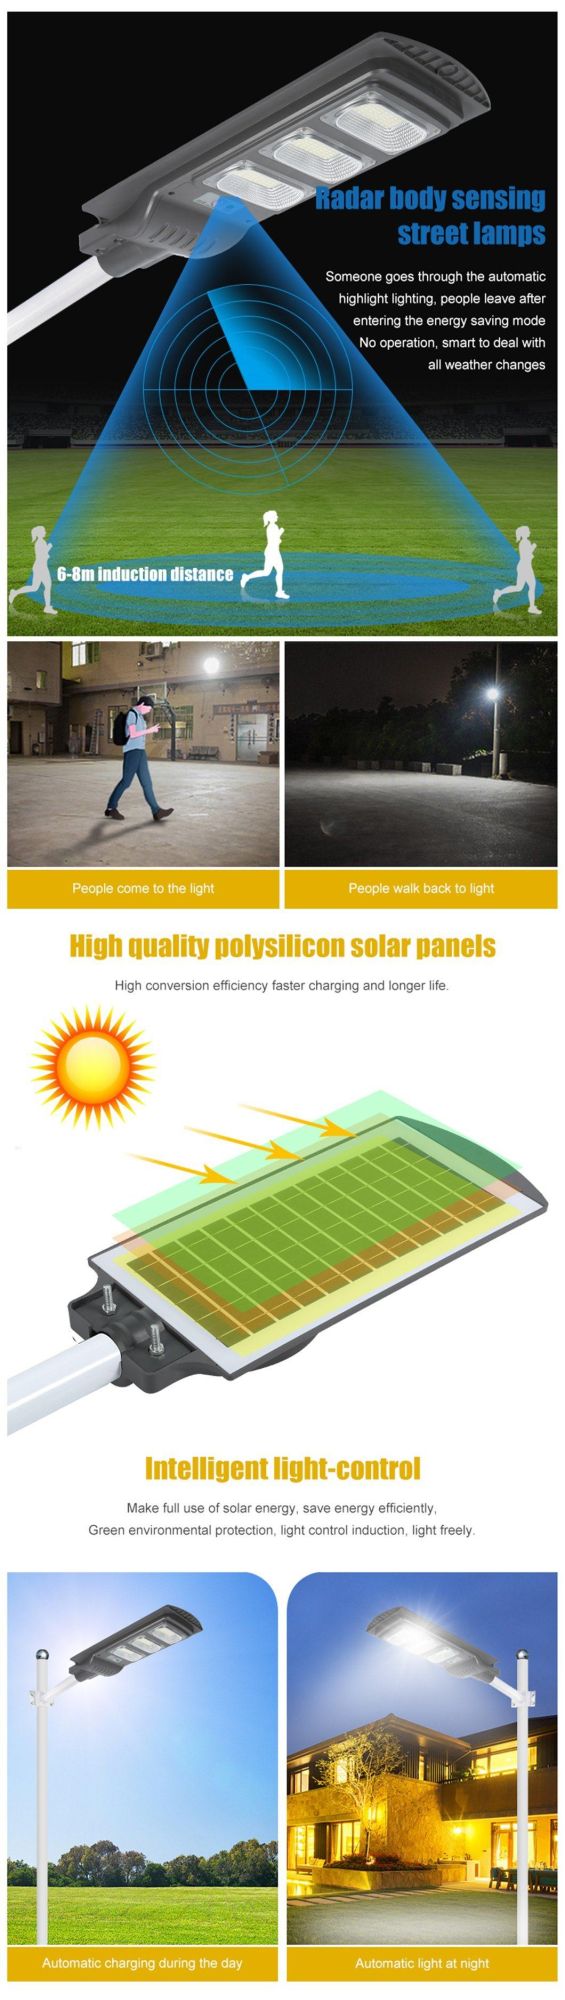 Super Brightness IP65 Waterproof Outdoor LED 30W 60W 90W 120W All in One Solar Motion Sensor Street Light